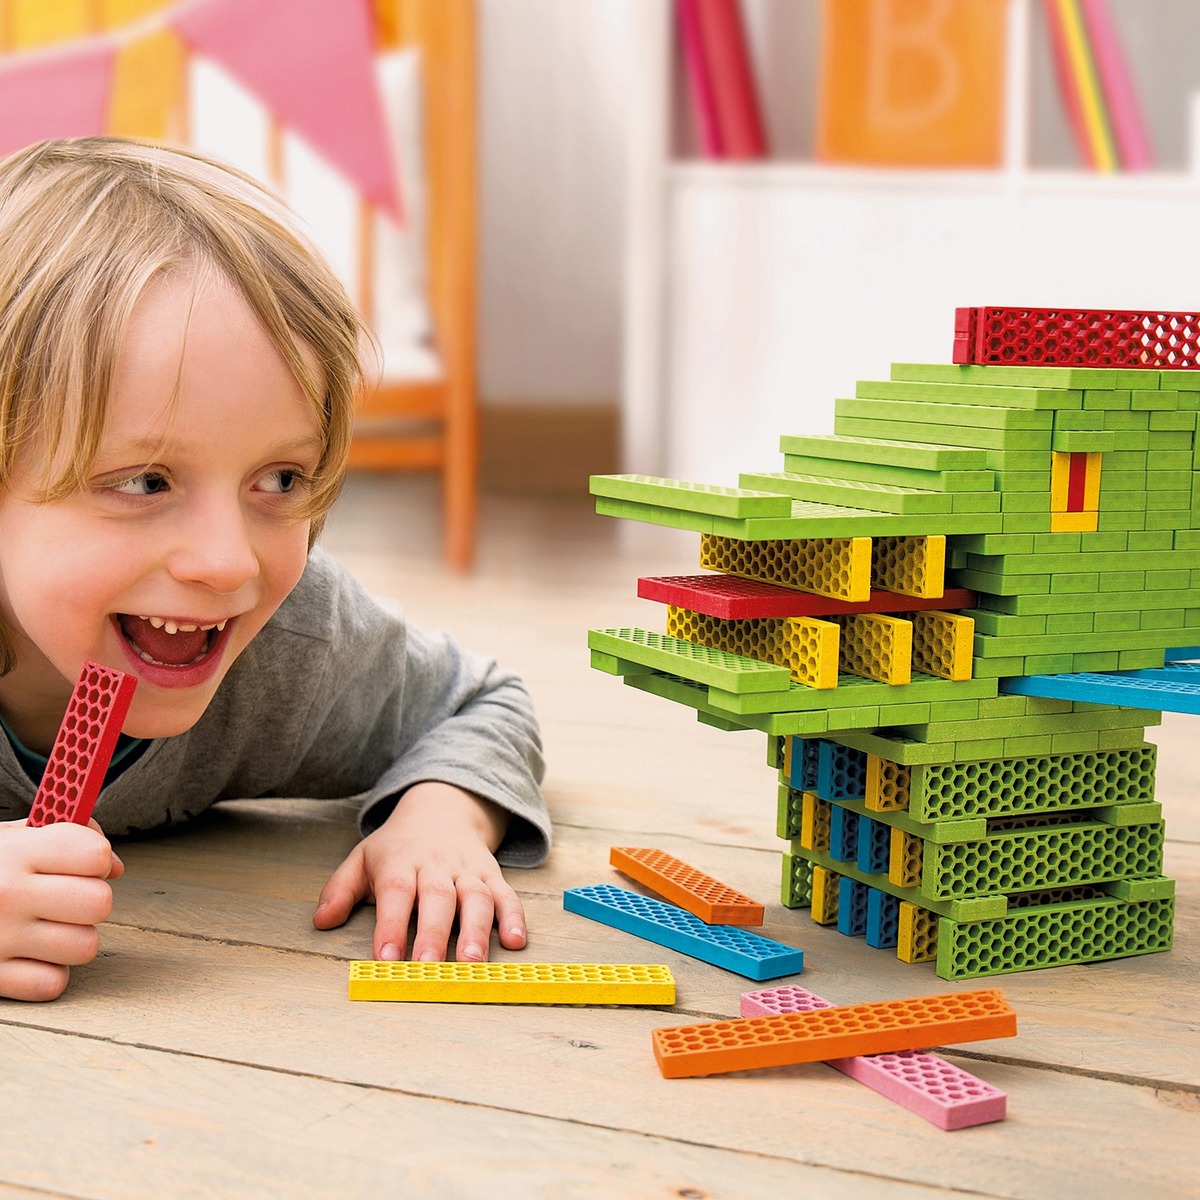 bioblo lego jeu couleur de construction une idee cadeau chez ugo et lea  (2)